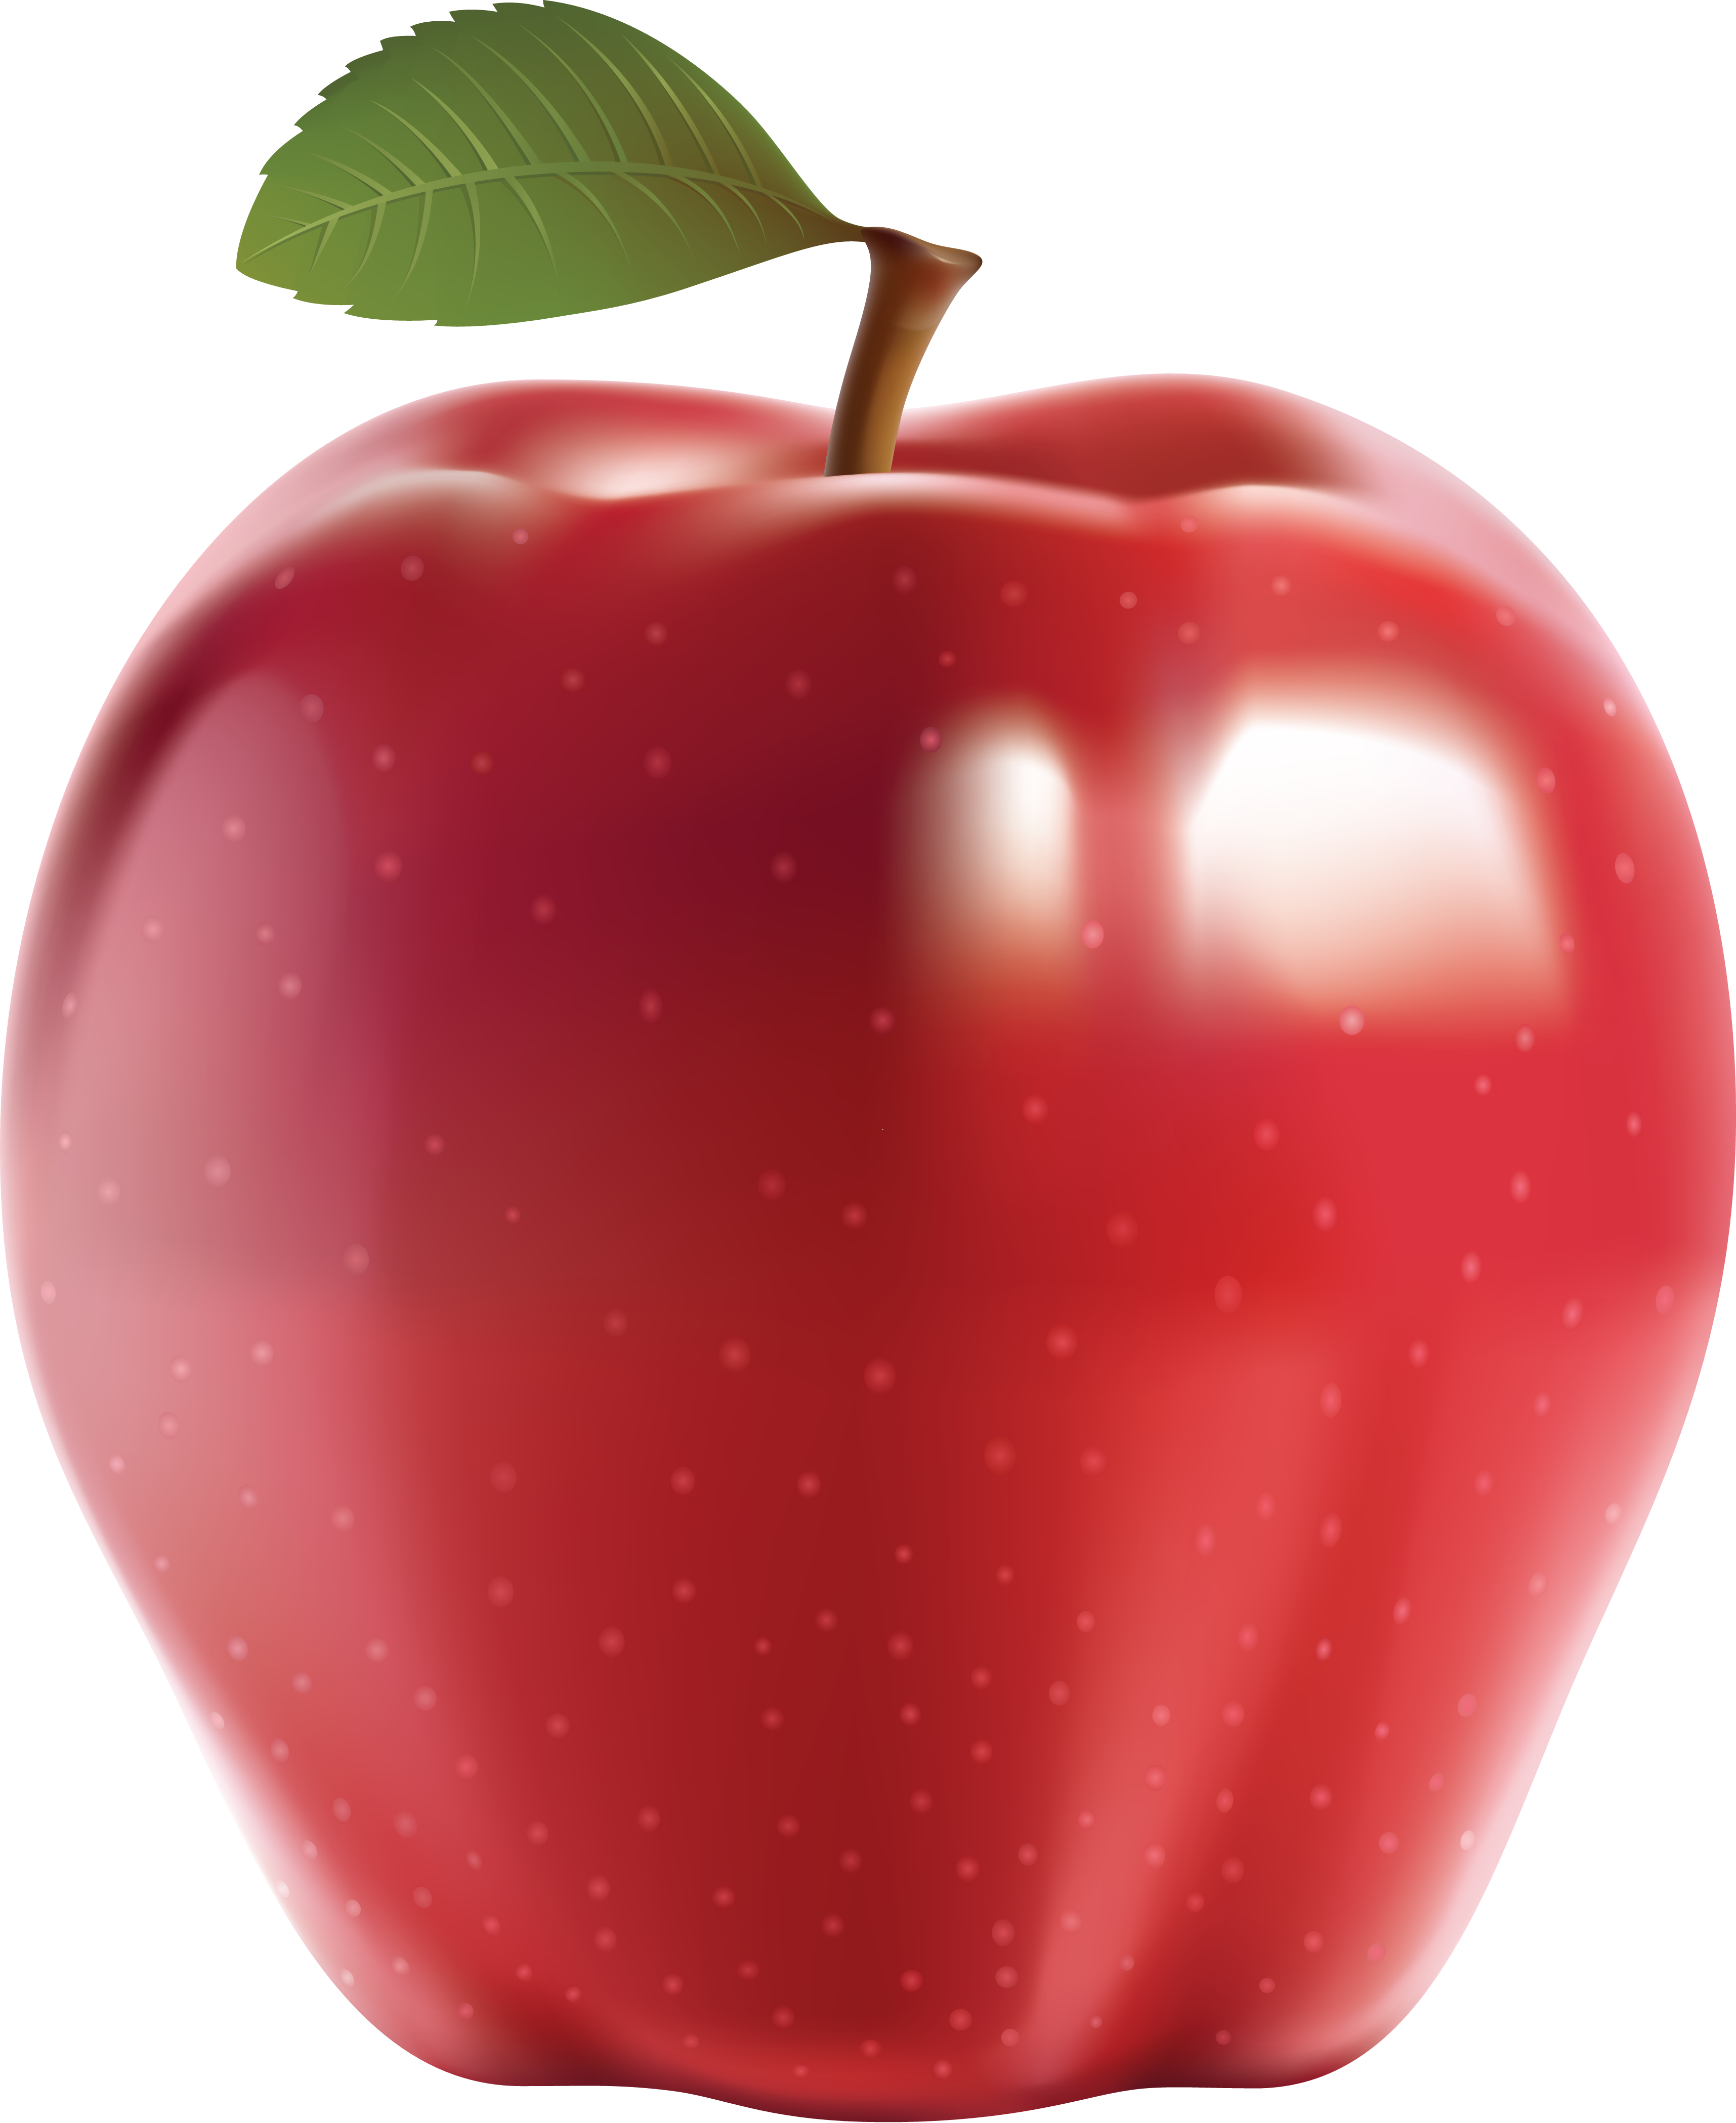 Grande mela rossa